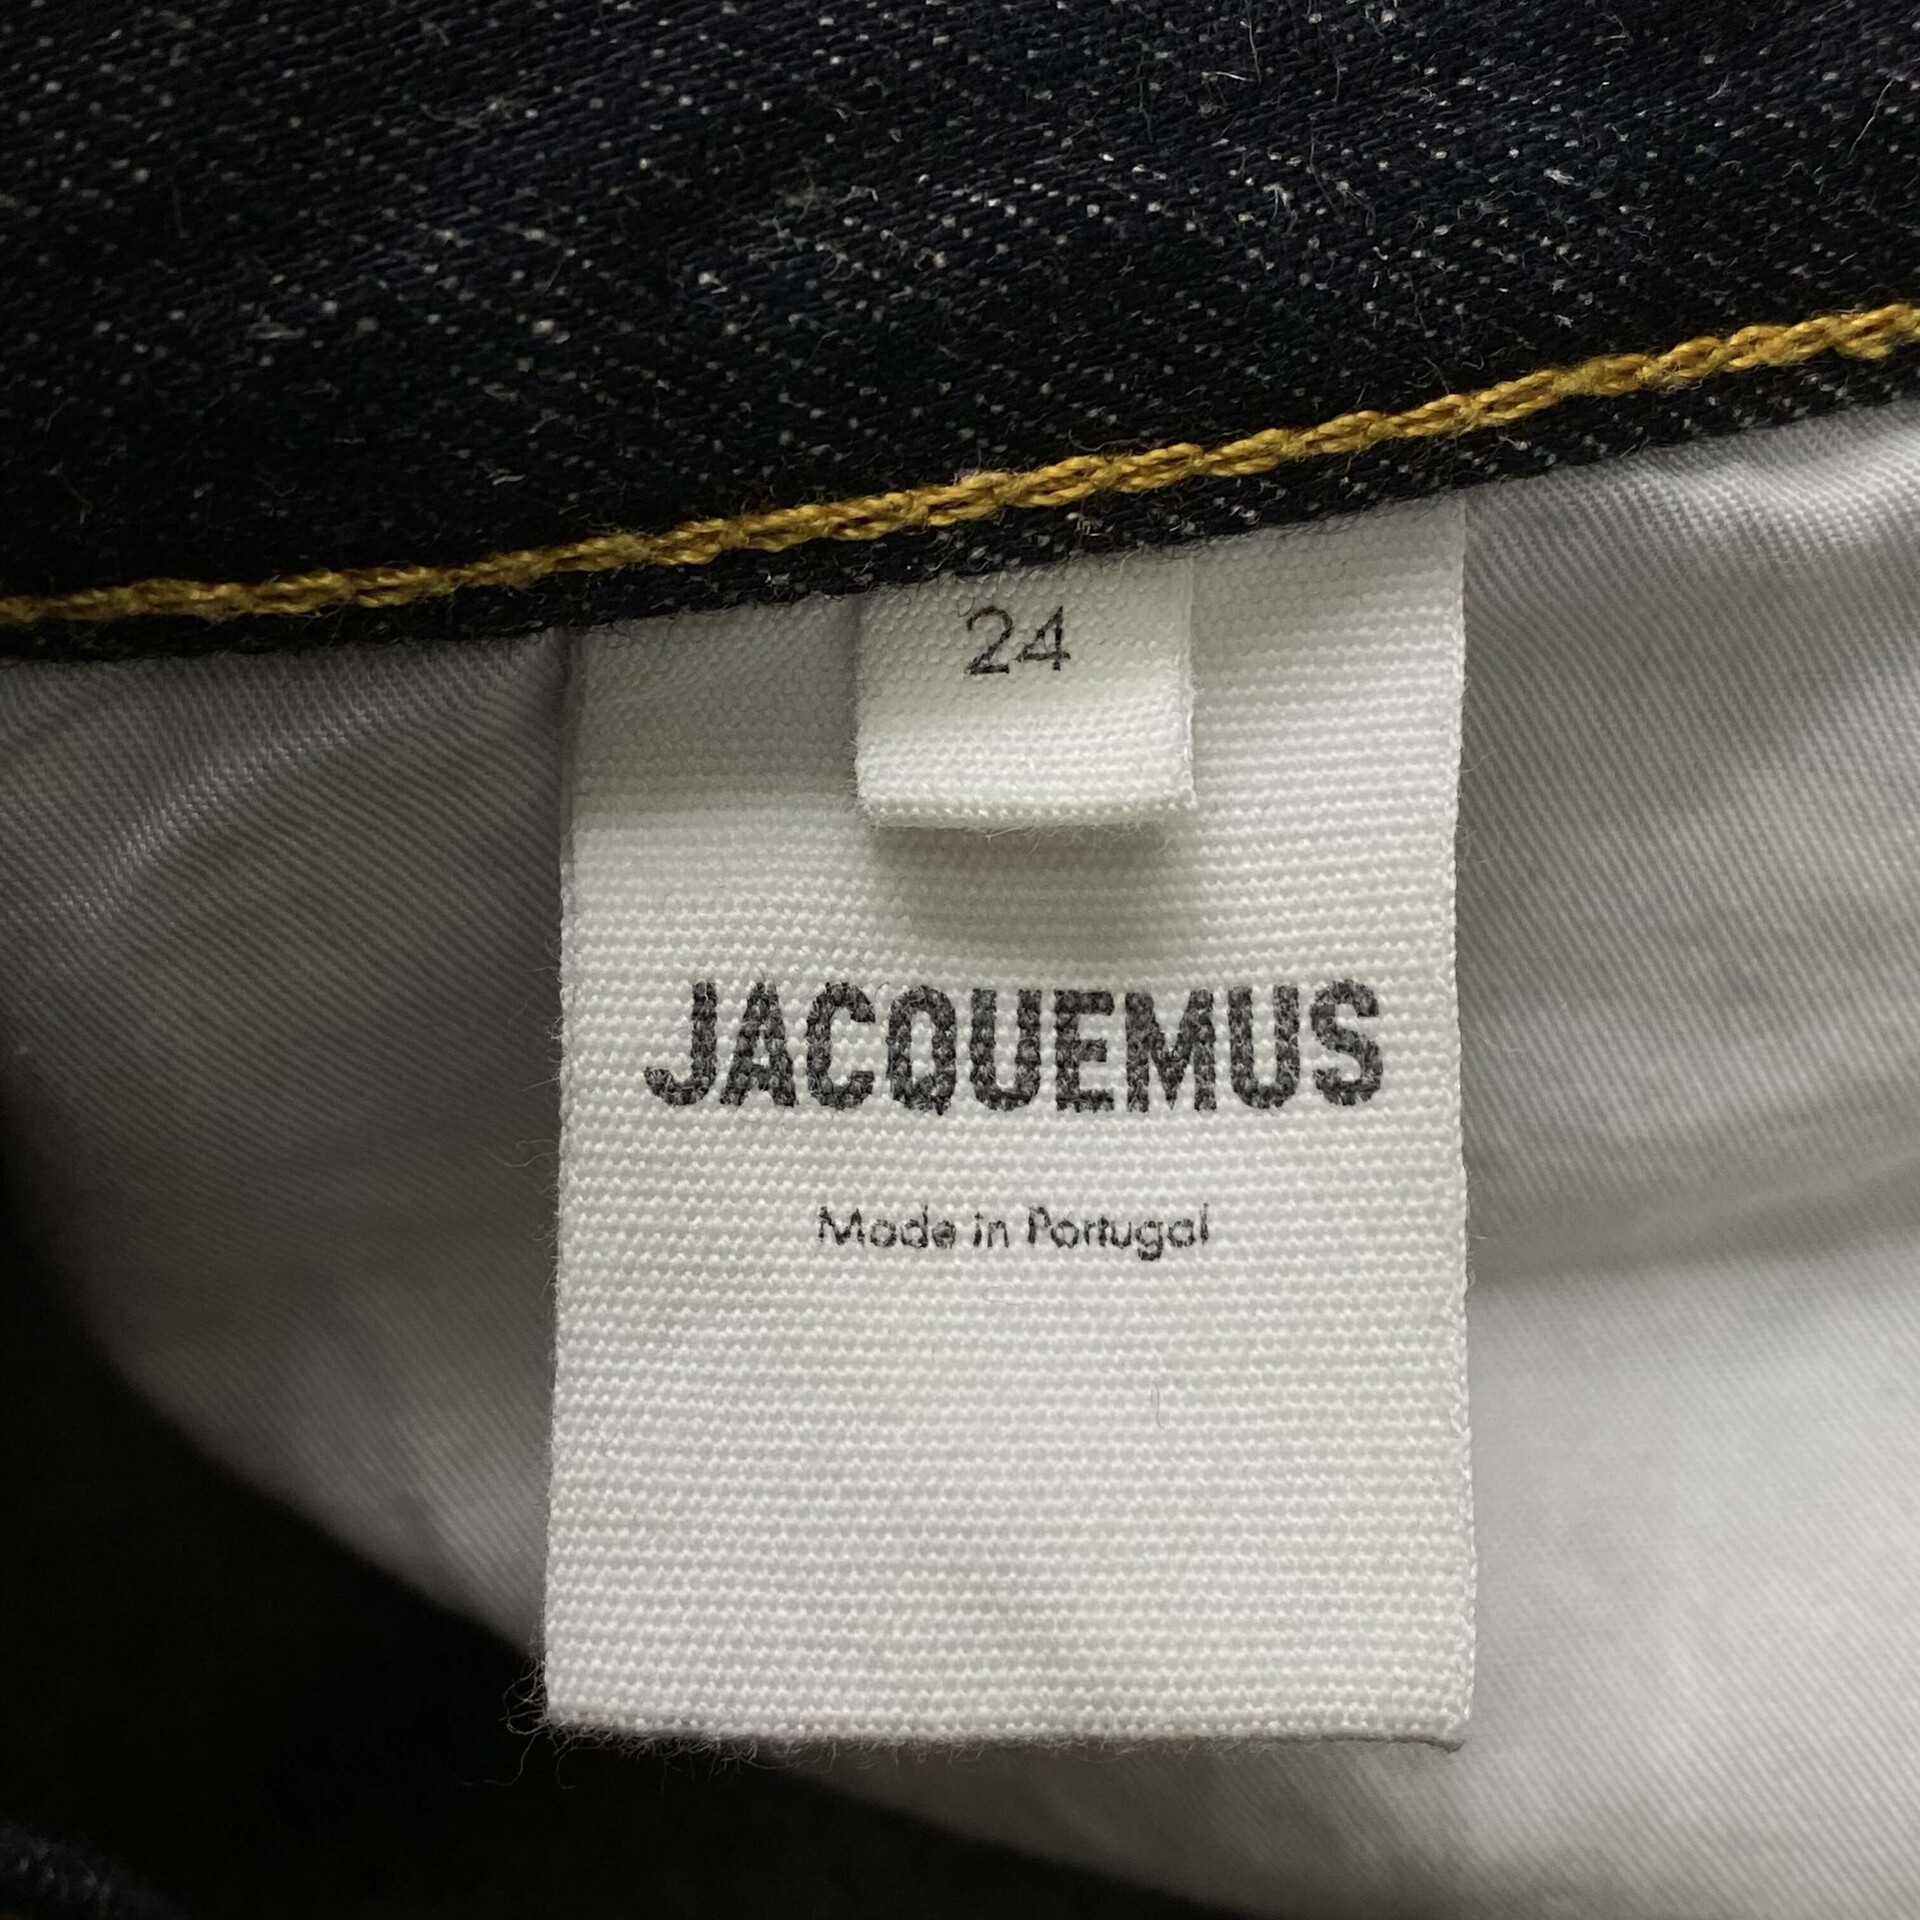 Calça Jacquemus L'Amour Jeans